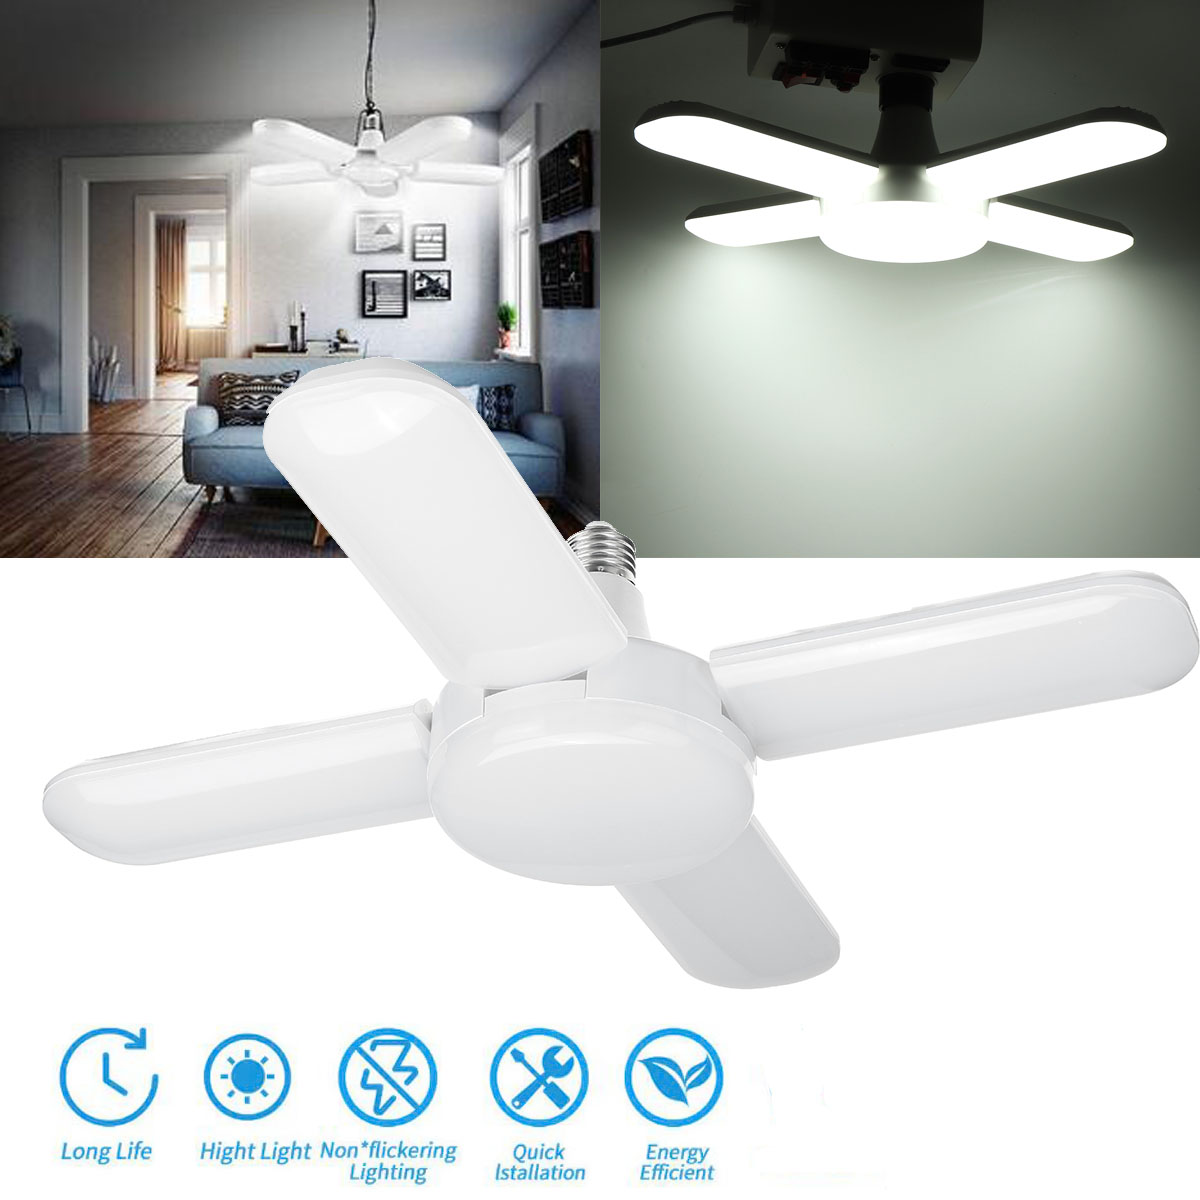 80W-85-265V-E27-LED-Garage-Shop-Work-Light-Ceiling-Deformable-Adjustable-Lamp-1732610-3